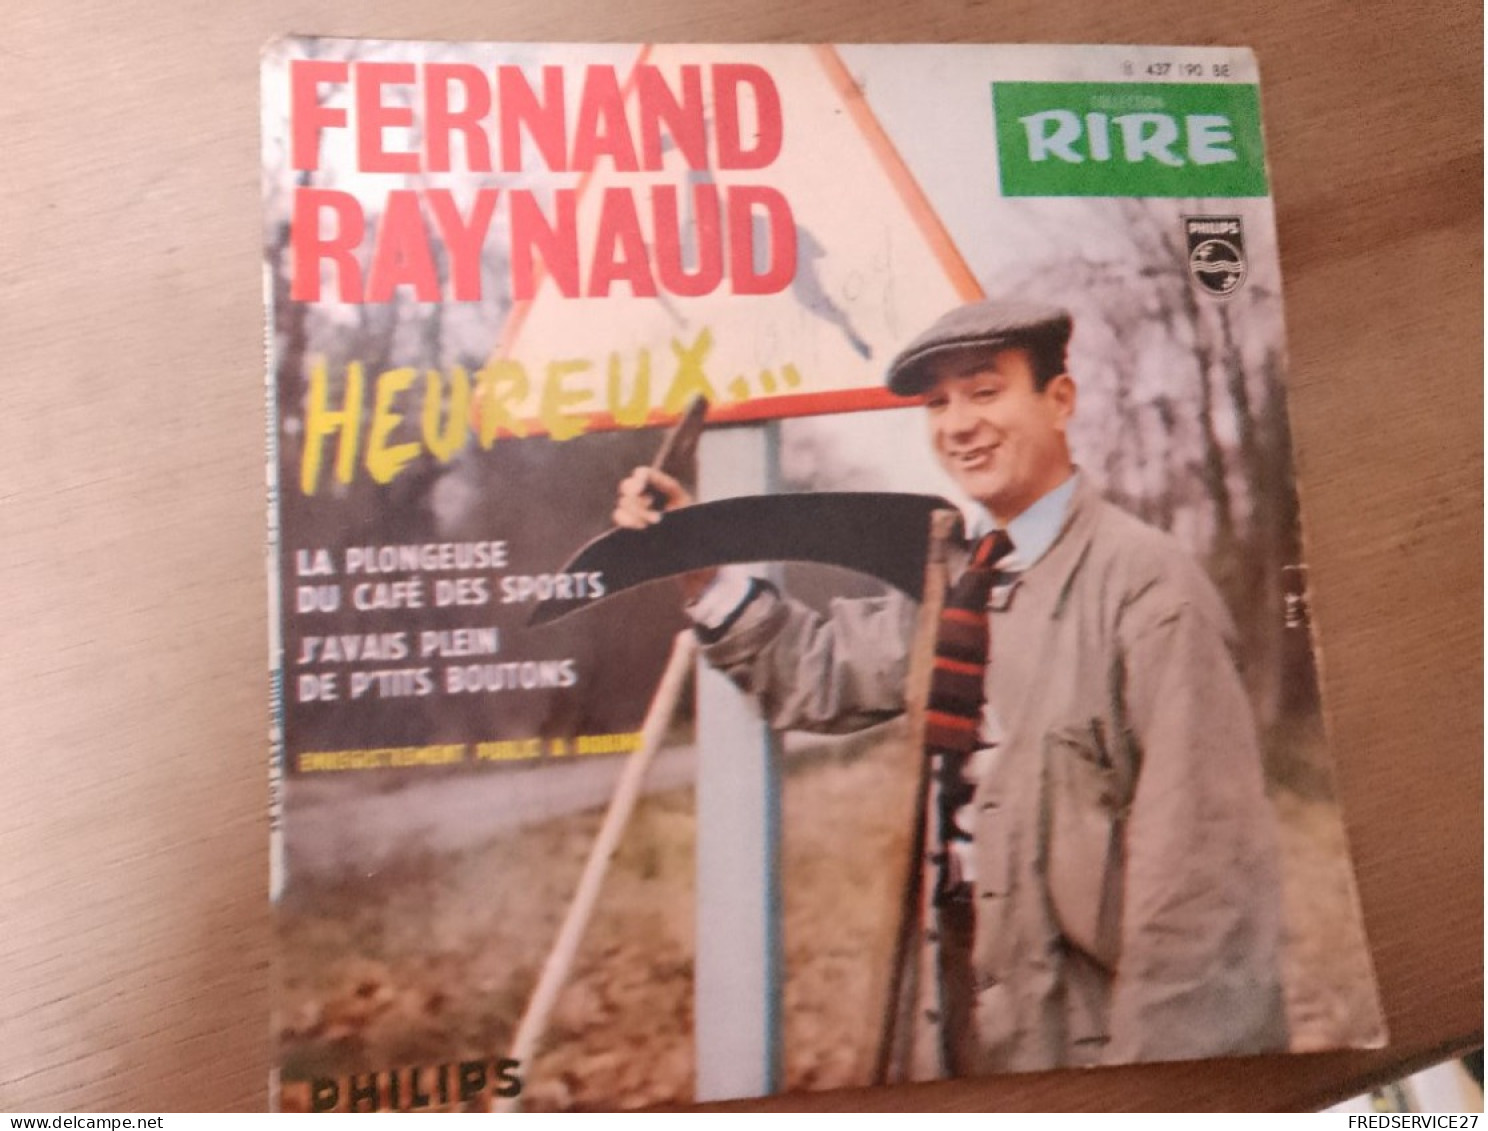 107 //  FERNAND RAYNAUD / HEUREUX ... / LA PLONGEUSE DU CAFE DES SPORTS - Comiques, Cabaret